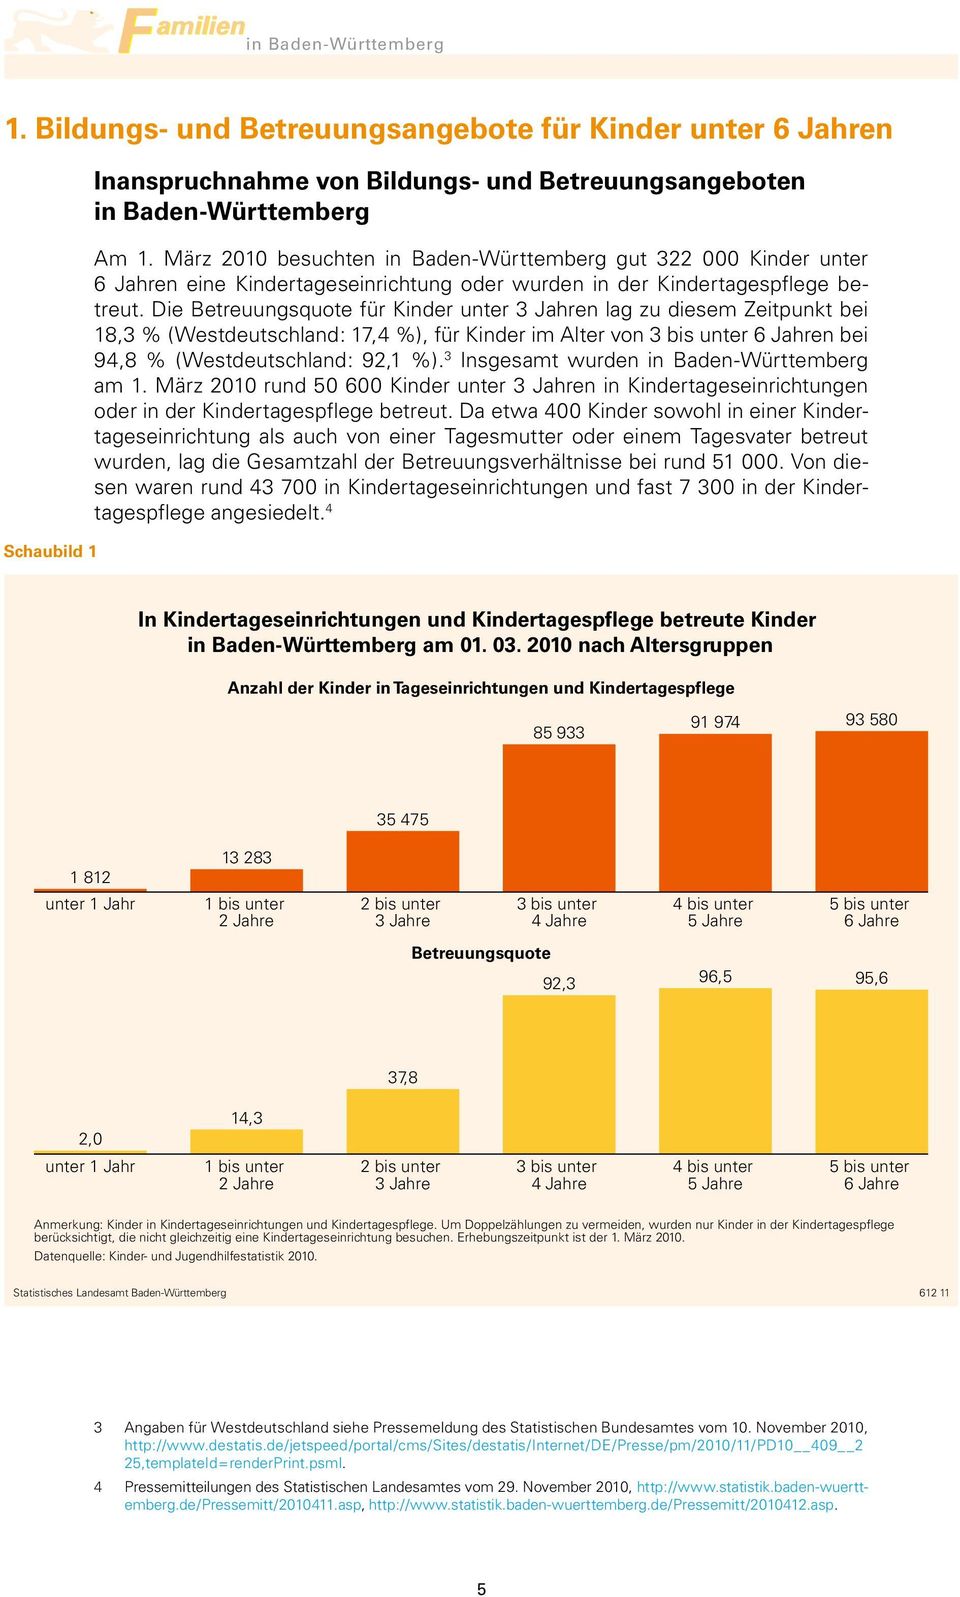 Die Betreuungsquote für Kinder unter 3 Jahren lag zu diesem Zeitpunkt bei 18,3 % (Westdeutschland: 17,4 %), für Kinder im Alter von 3 bis unter 6 Jahren bei 94,8 % (Westdeutschland: 92,1 %).